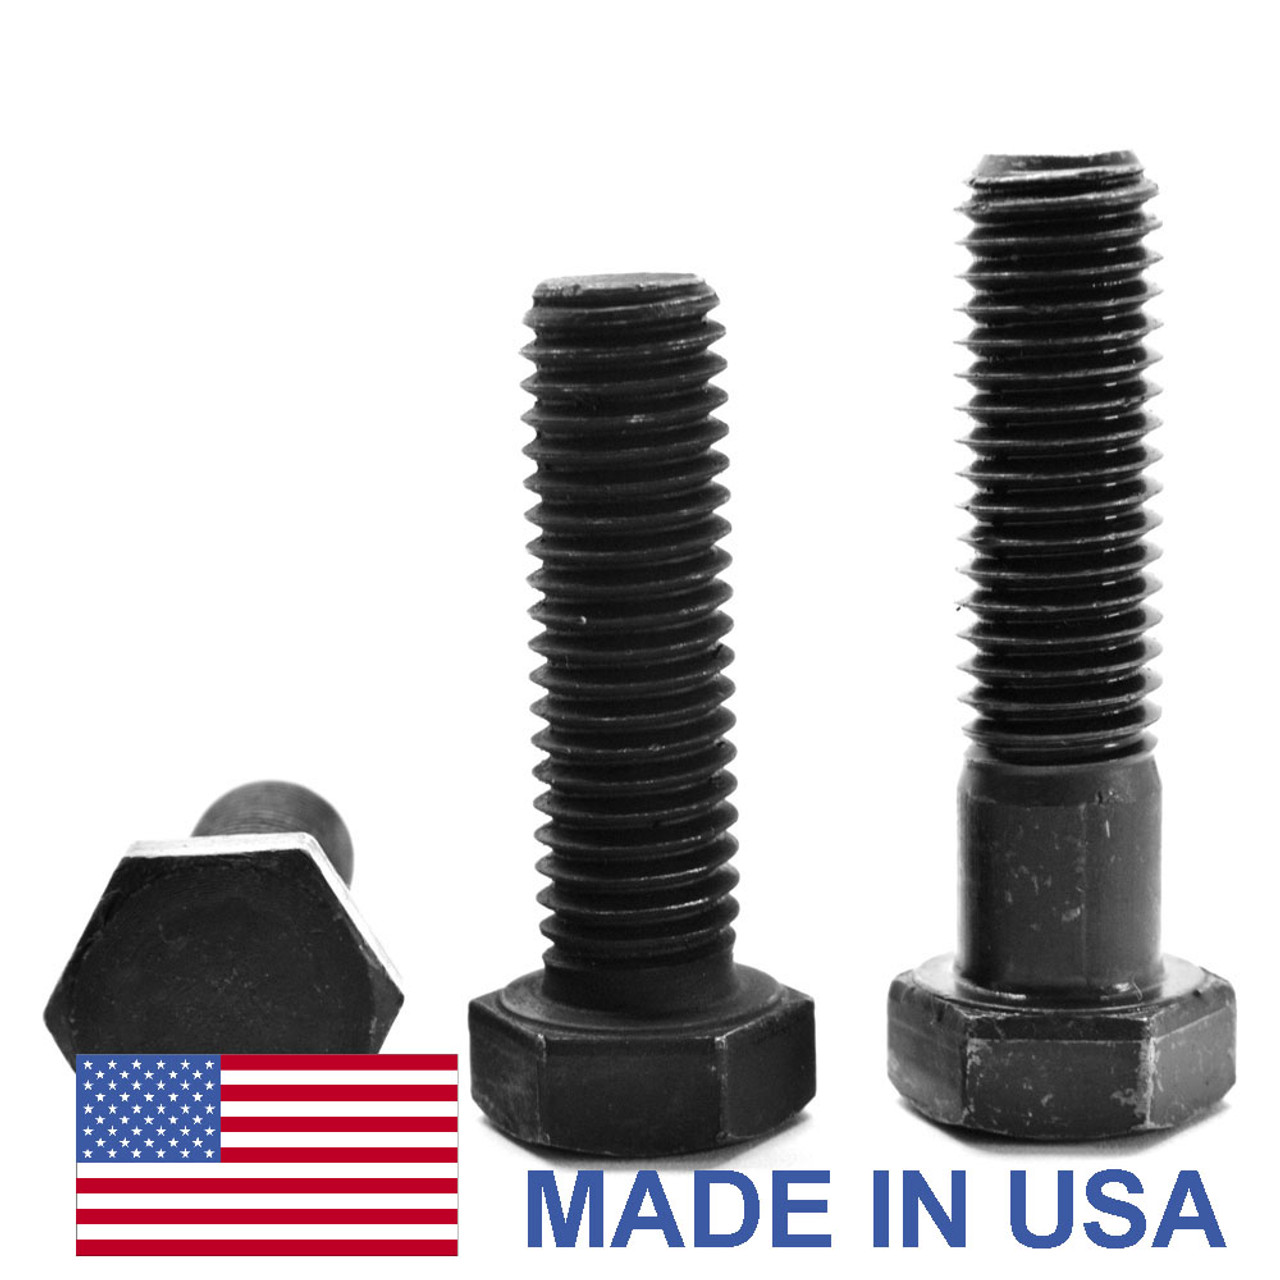 1"-14 x 7" (PT) UNS Thread Grade 8 Hex Cap Screw (Bolt) - USA Alloy Steel Black Oxide